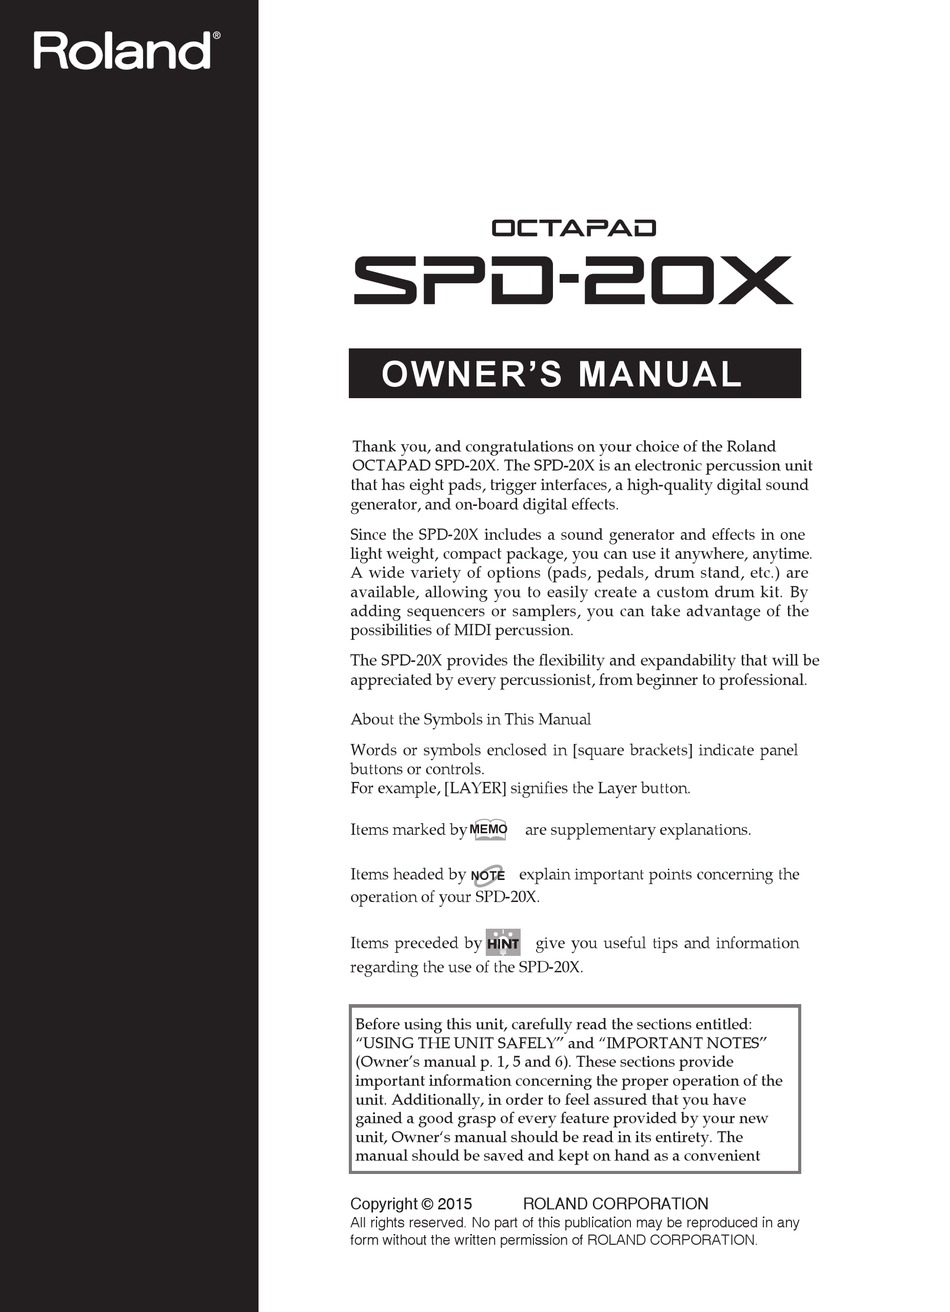 rockstar pad 20 user manual pdf